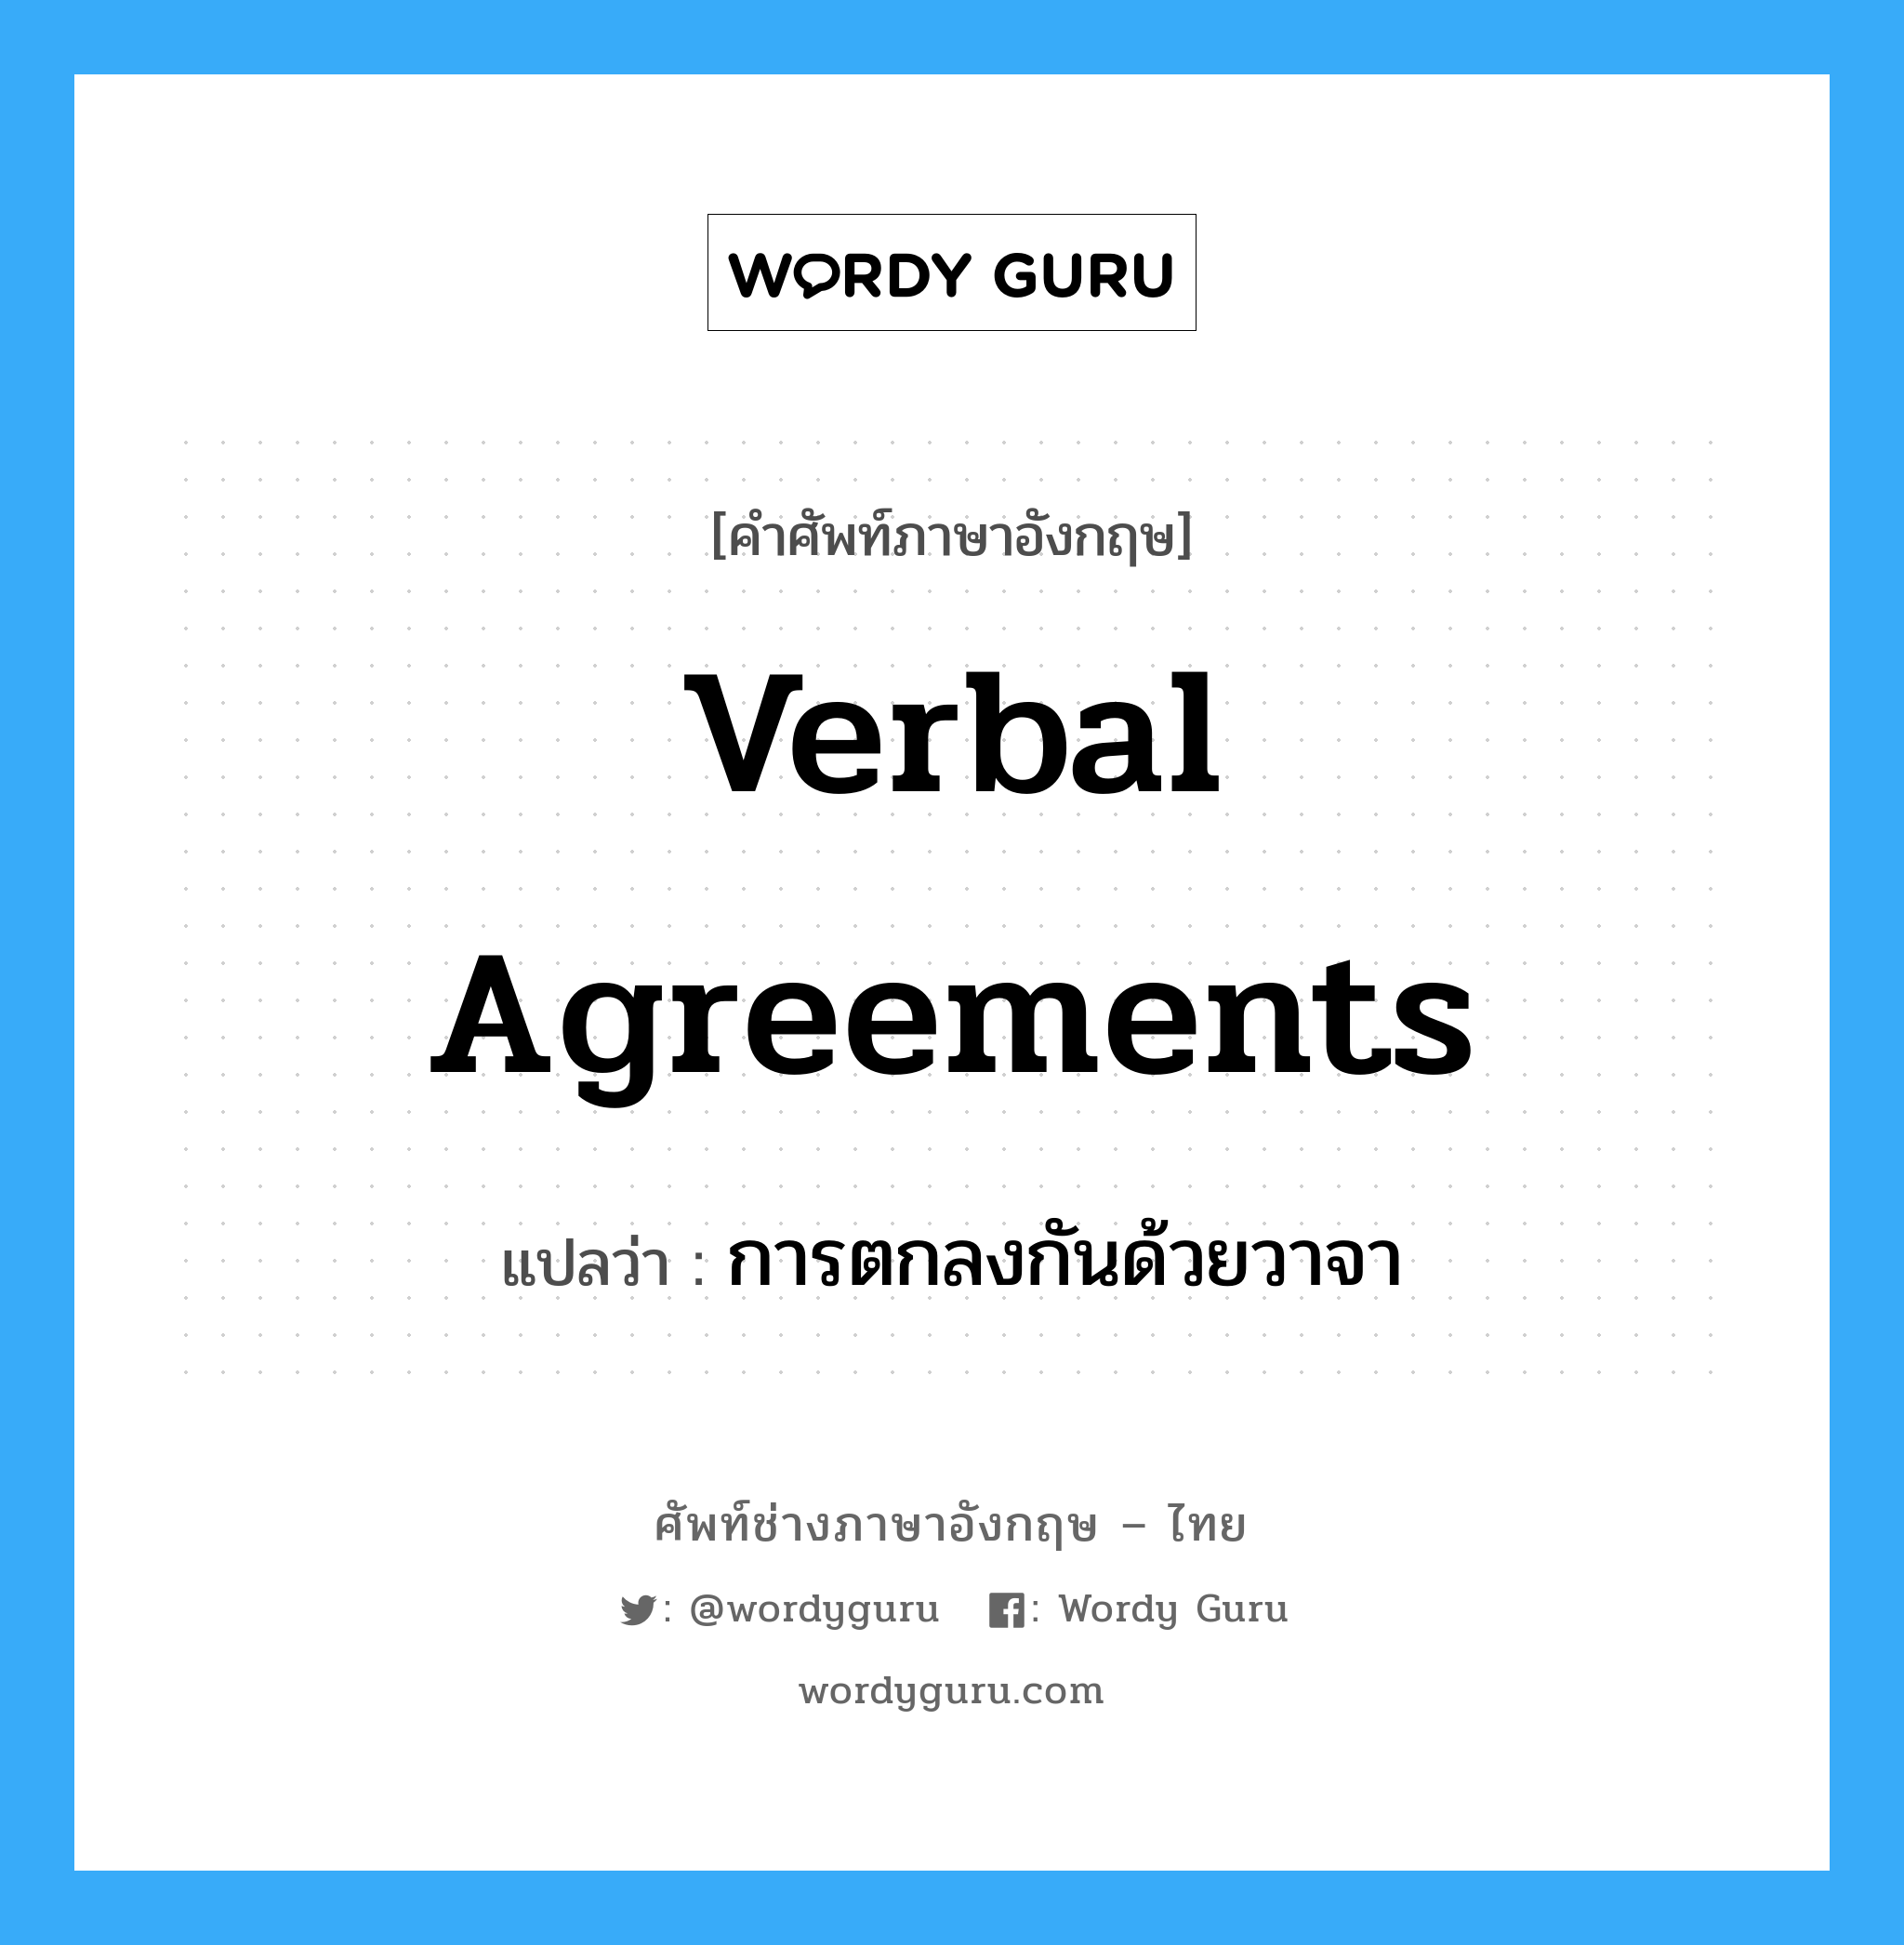 การตกลงกันด้วยวาจา ภาษาอังกฤษ?, คำศัพท์ช่างภาษาอังกฤษ - ไทย การตกลงกันด้วยวาจา คำศัพท์ภาษาอังกฤษ การตกลงกันด้วยวาจา แปลว่า Verbal Agreements